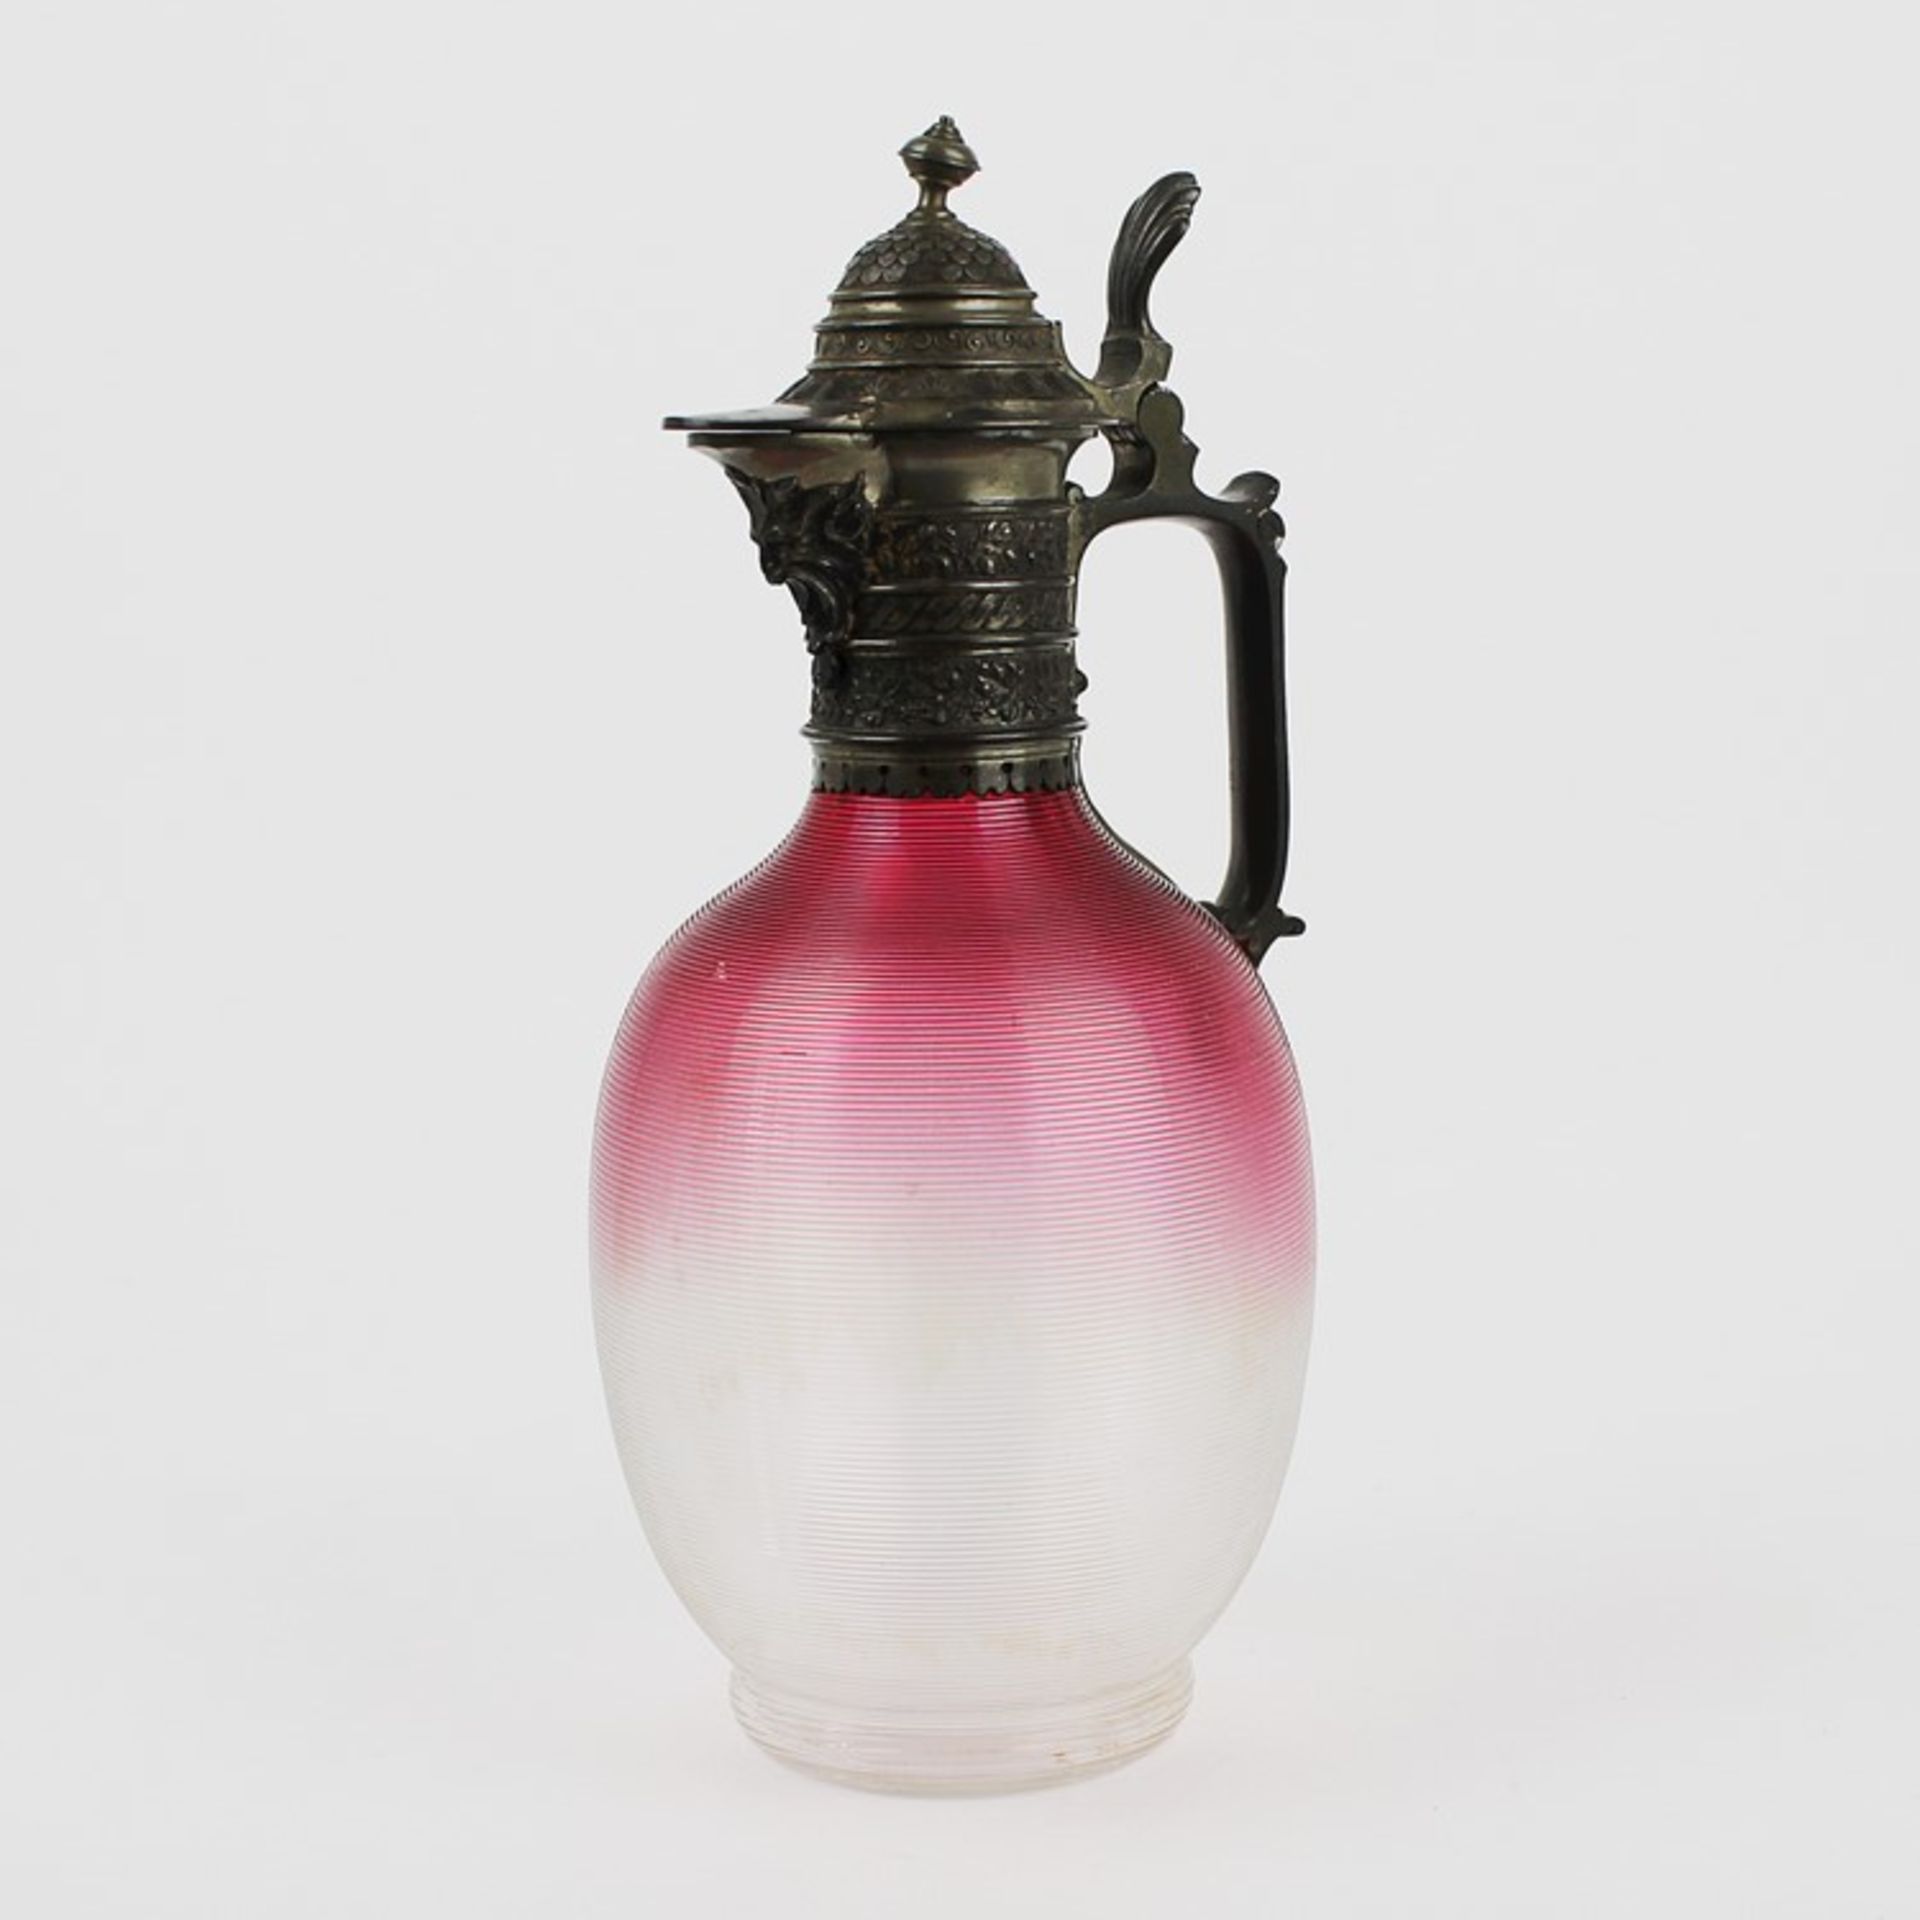 Historismus - Kanneum 1880/1900, Historismus, farbloses Glas, nach oben hin rosa verlaufend,